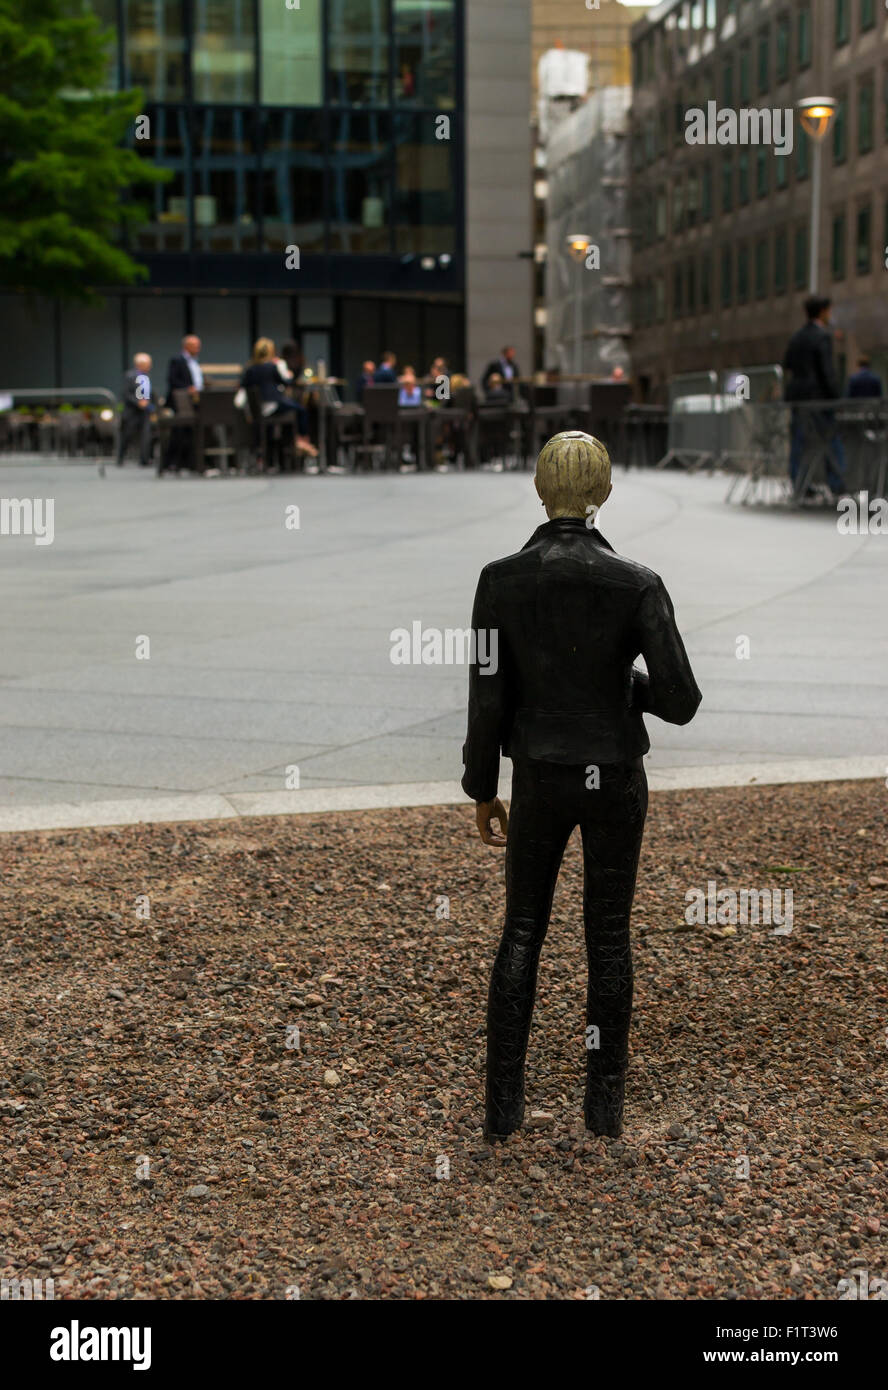 18 agosto 2015 - Miniatura figura umana guarda i lavoratori della città come parte di un arte di installazione dall'artista giapponese Tomoaki Suzuki Foto Stock